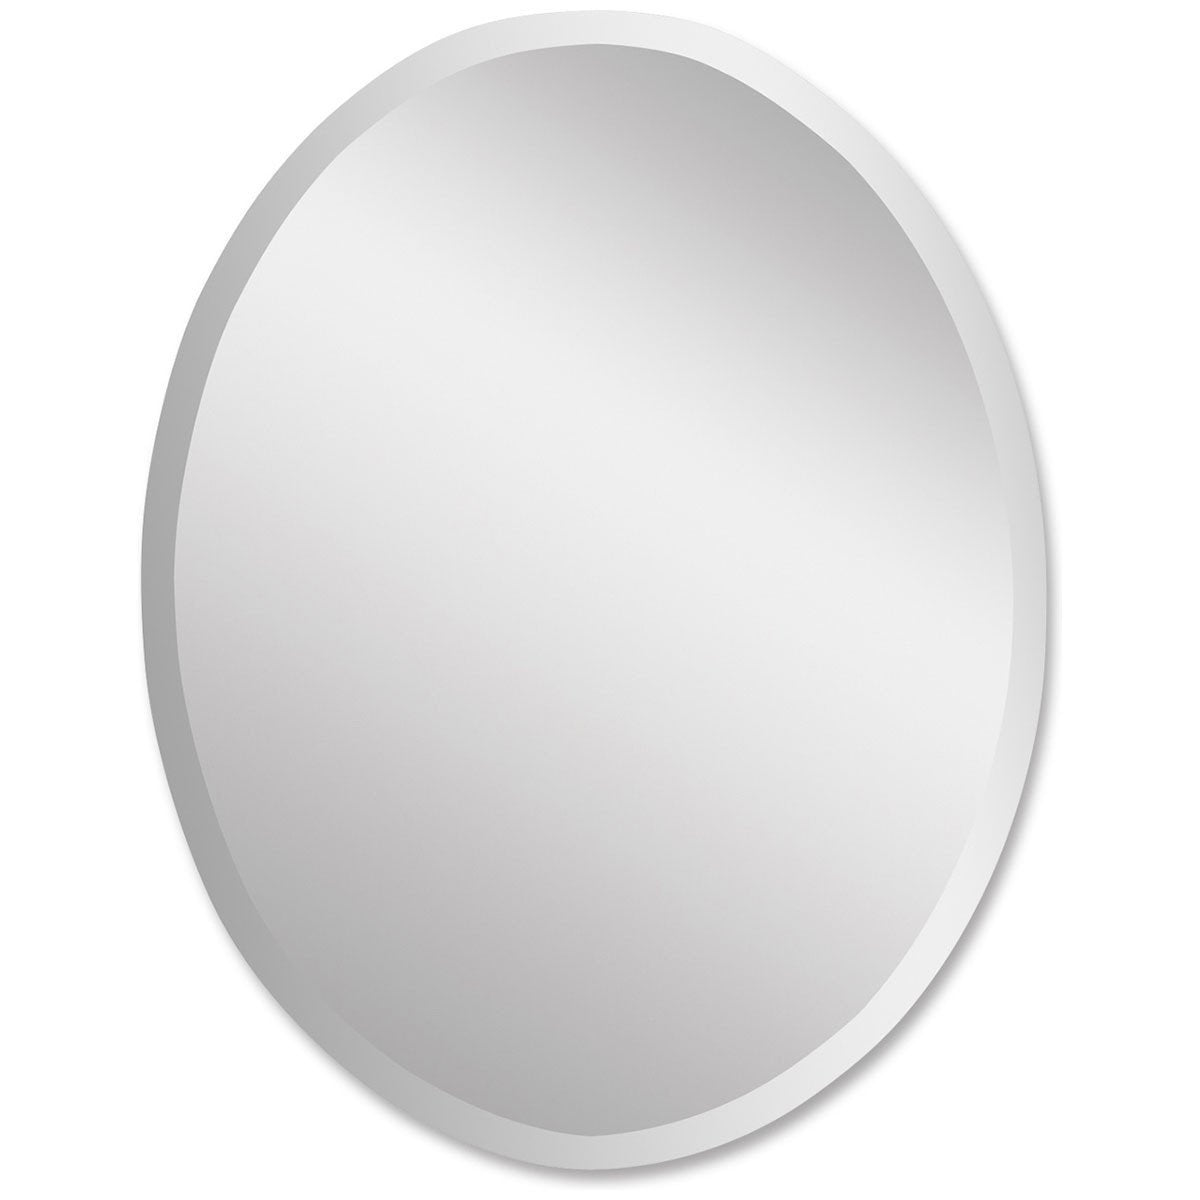 Uttermost Frameless Vanity Oval Mirror